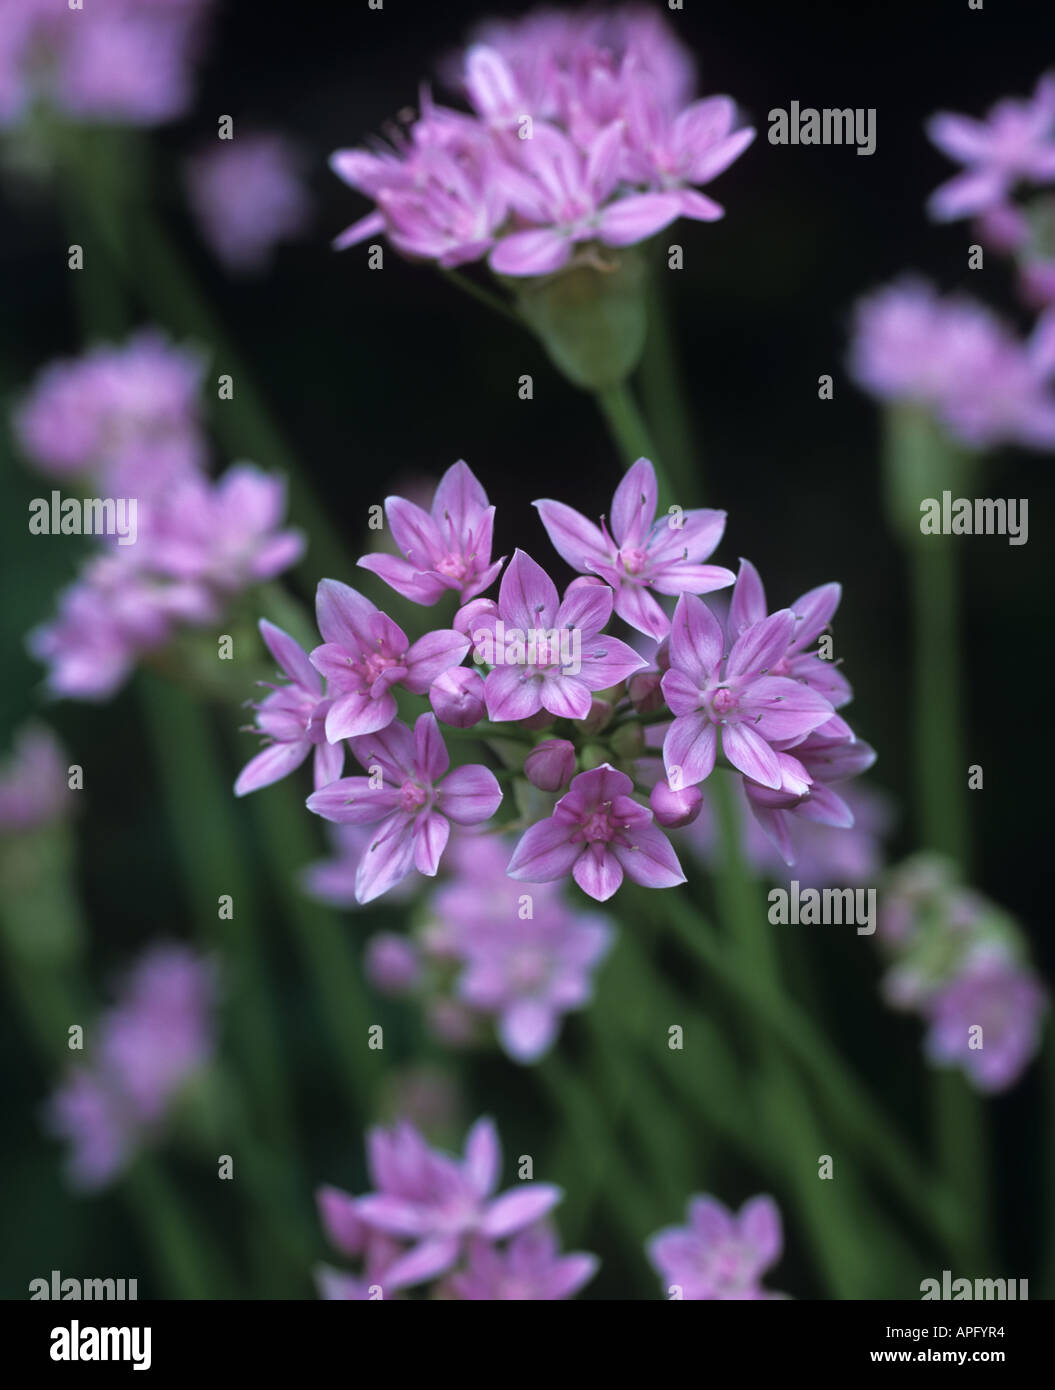 Flowering head of Allium unifolium Stock Photo